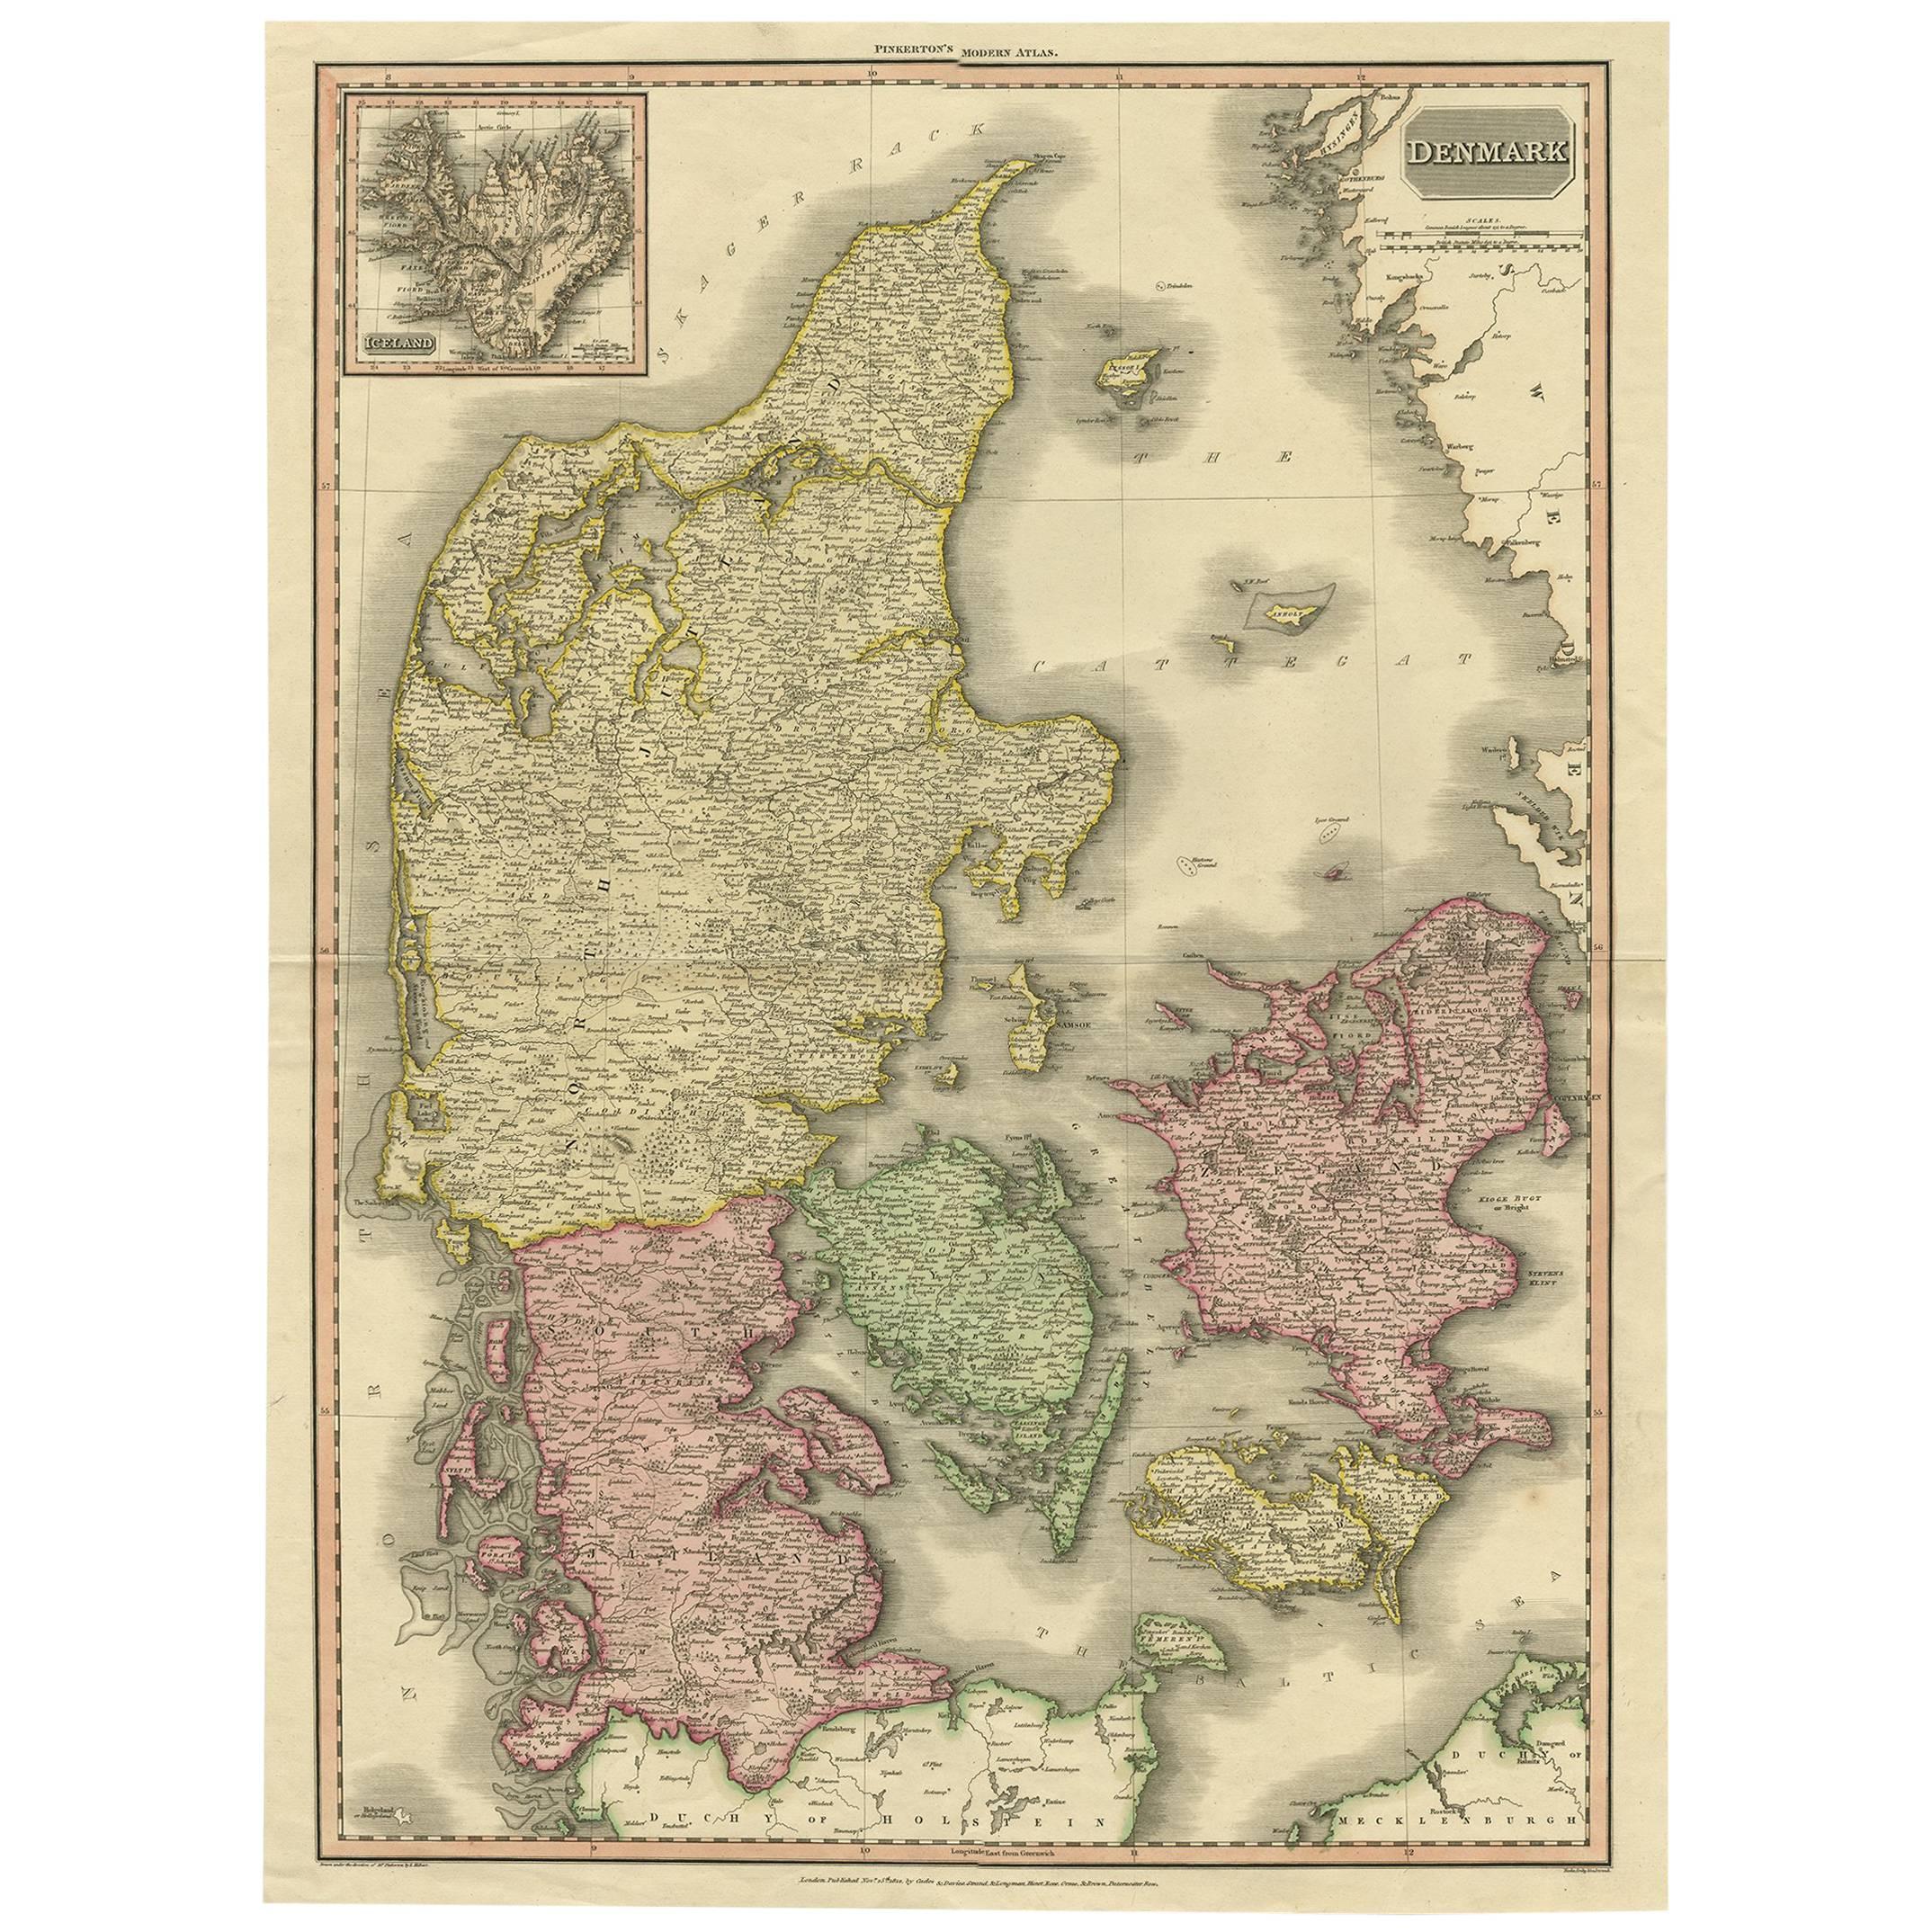 Grande carte ancienne originale du Danemark du 19e siècle par J. Pinkerton, 1812